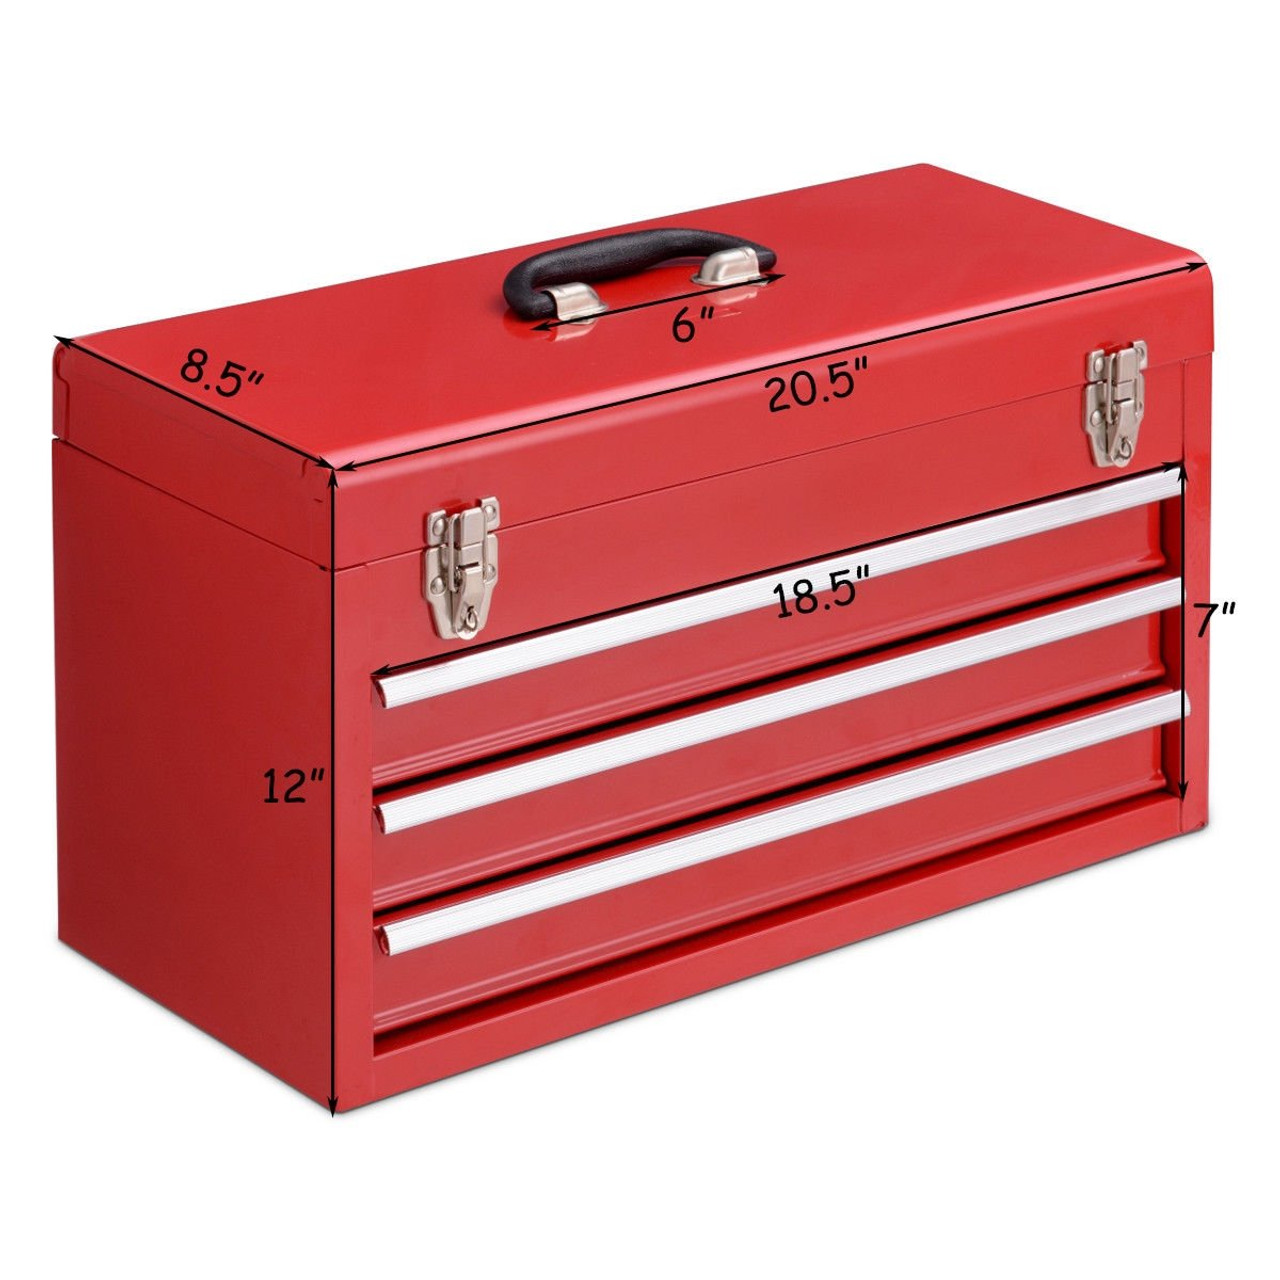 Toolbox 64. Ящик для инструментов металлический. Переносной ящик для инструмента. Ящик для инструментов металлический переносной. Toolbox ящик для инструмента.